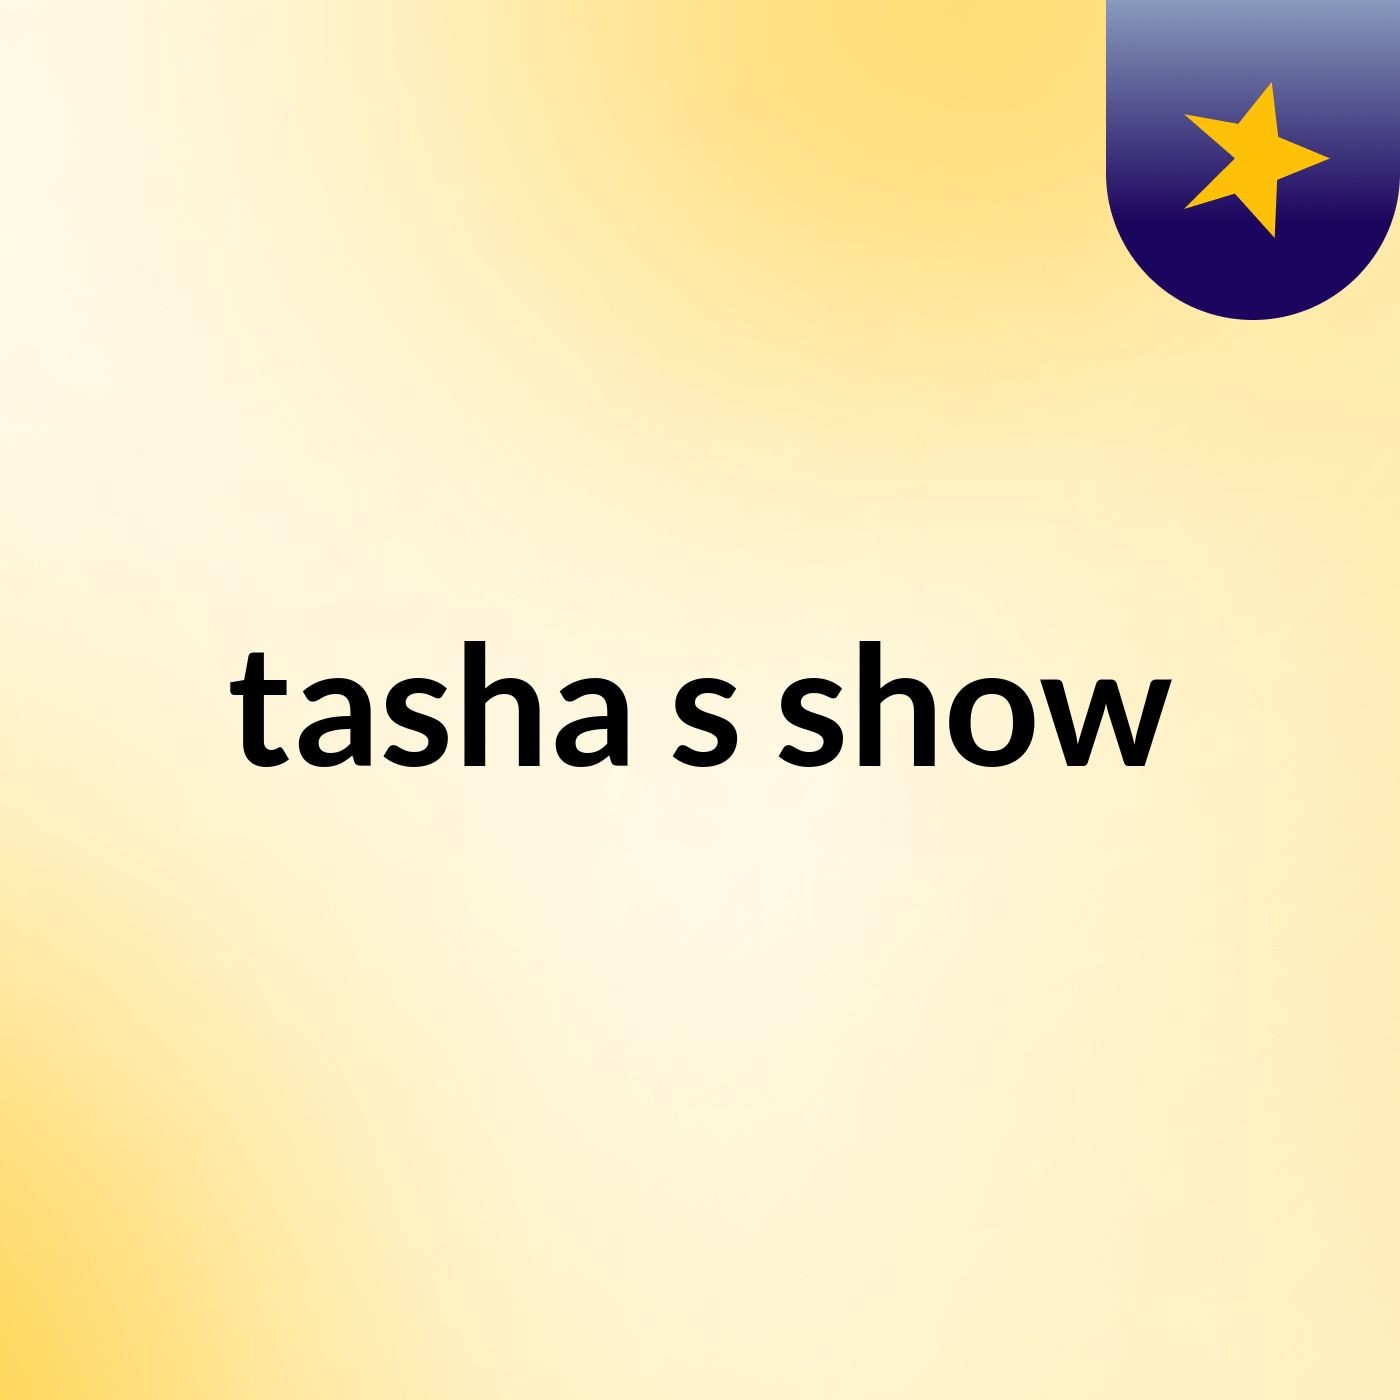 tasha's show